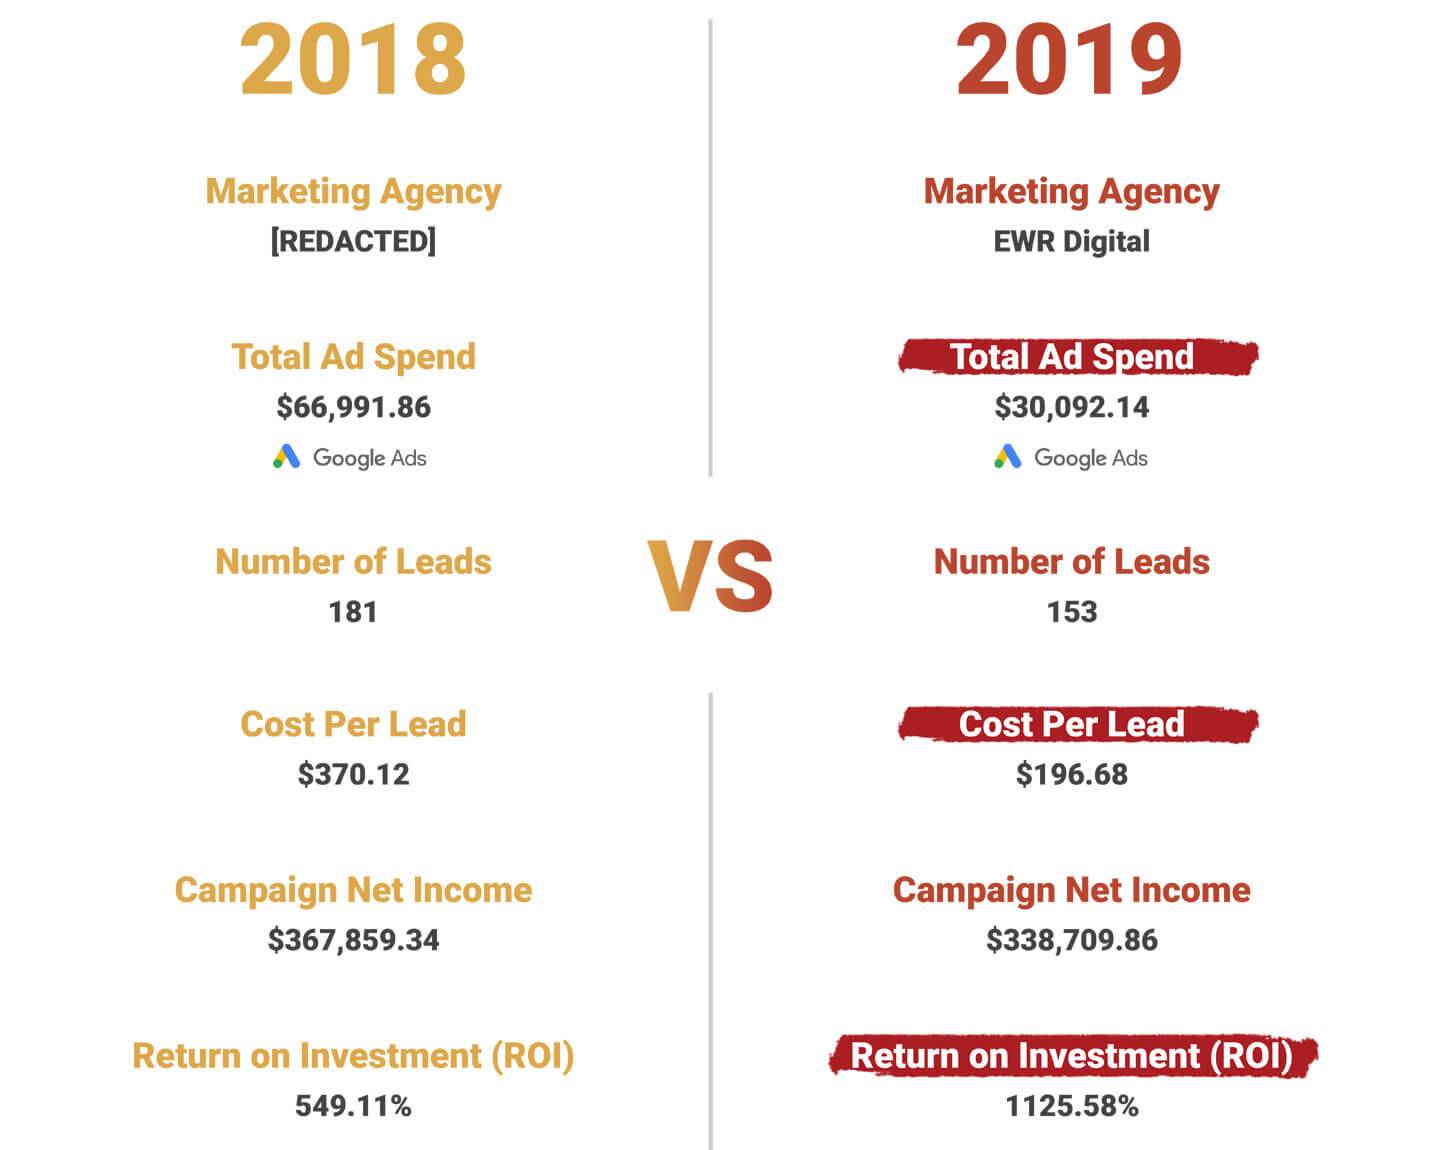 Paid Media Results Comparison 2018 vs 2019